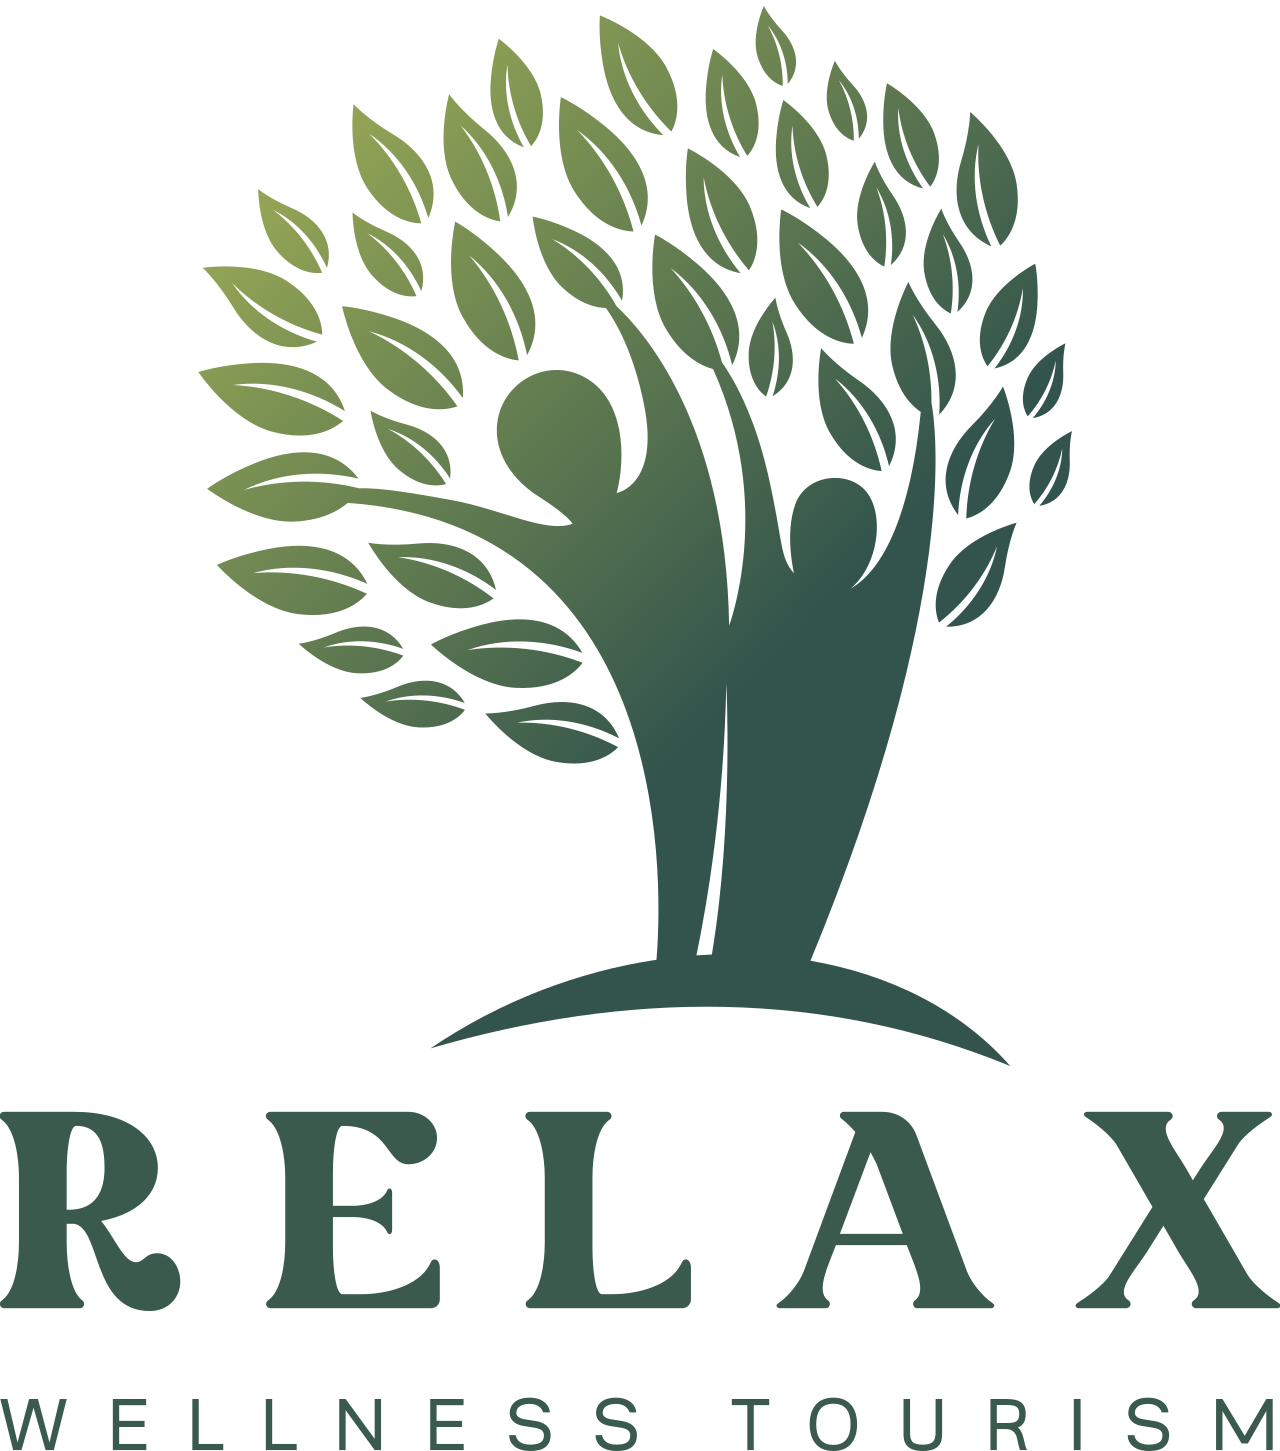 Relax's logo